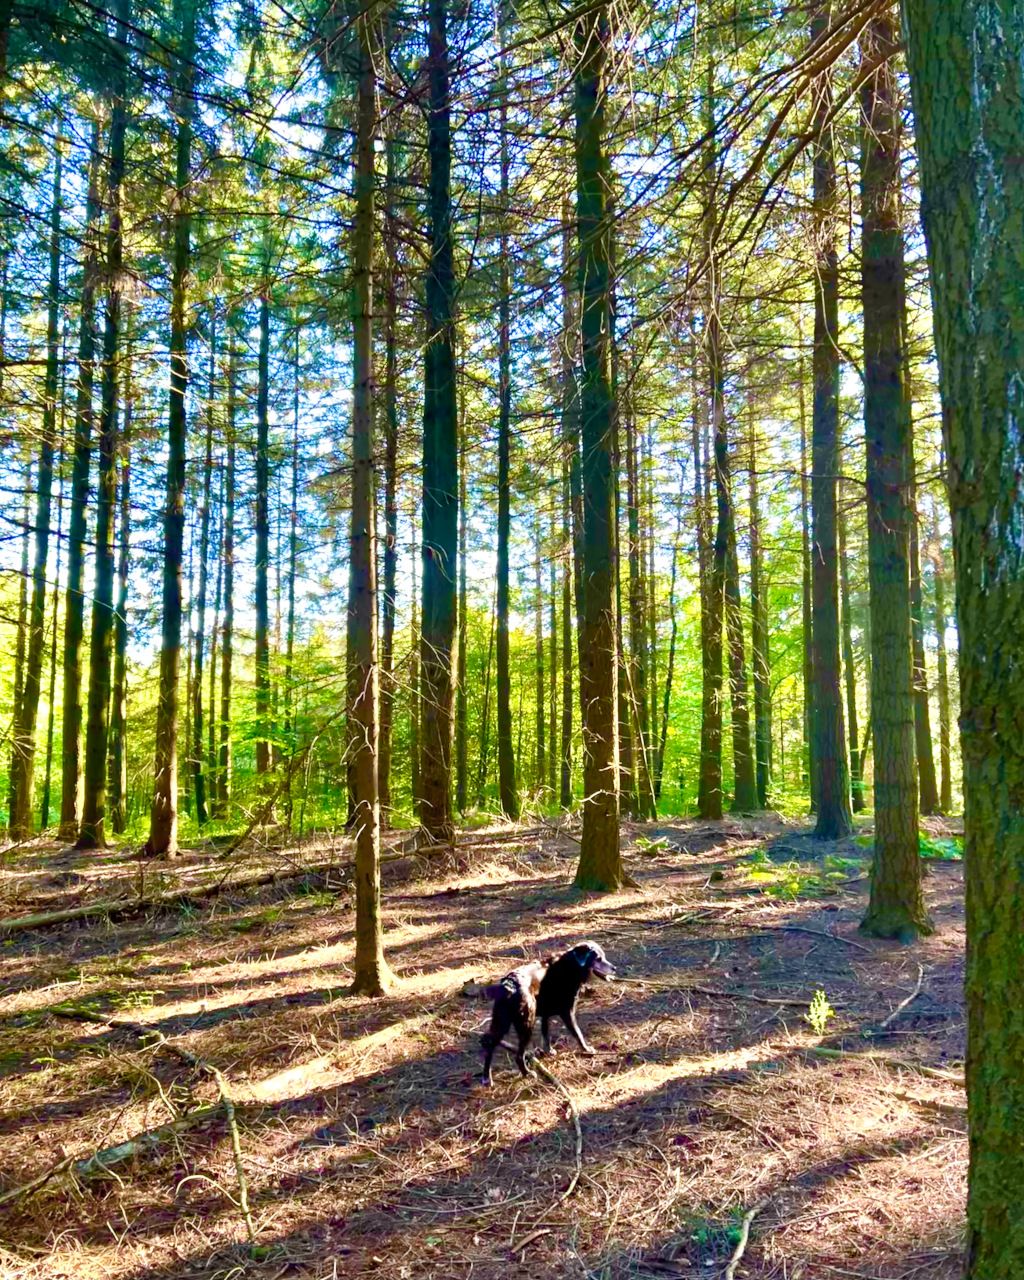 Das Bild zeigt einen aufmerksamen Hund bei der Suche auf dem Waldboden zwischen Bäumen als Sinnbild für ein spannendes Training der Impulskontrolle beim Waldbaden mit Hund.